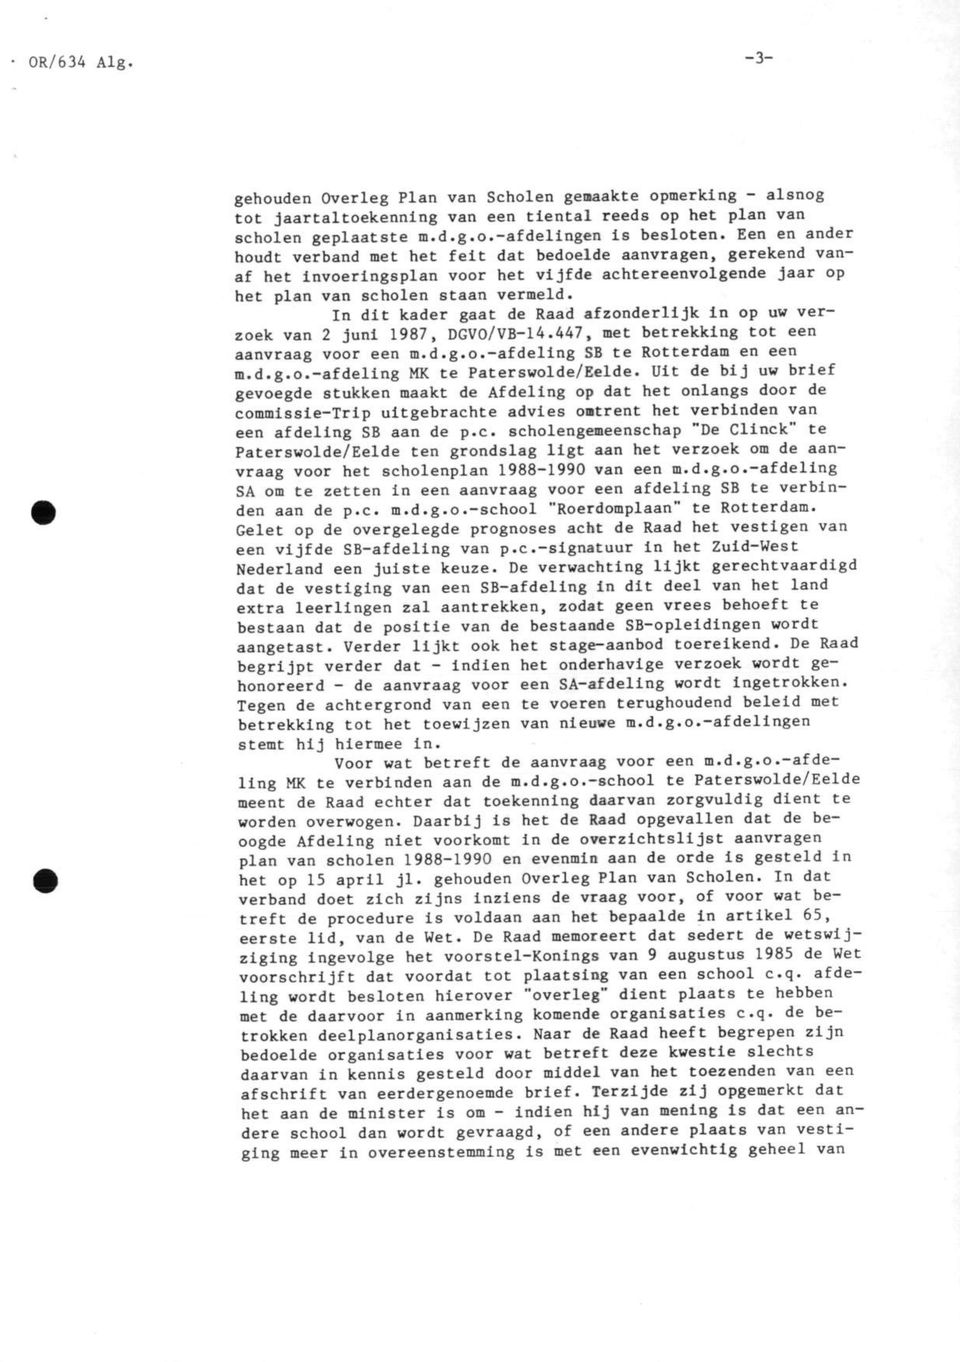 In dit kader gaat de Raad afzonderlijk in op uw verzoek van 2 juni 1987, DGVO/VB-14.447, met betrekking tot een aanvraag voor een m.d.g.o.-afdeling SB te Rotterdam en een m.d.g.o.-afdeling MK te Paterswolde/Eelde.